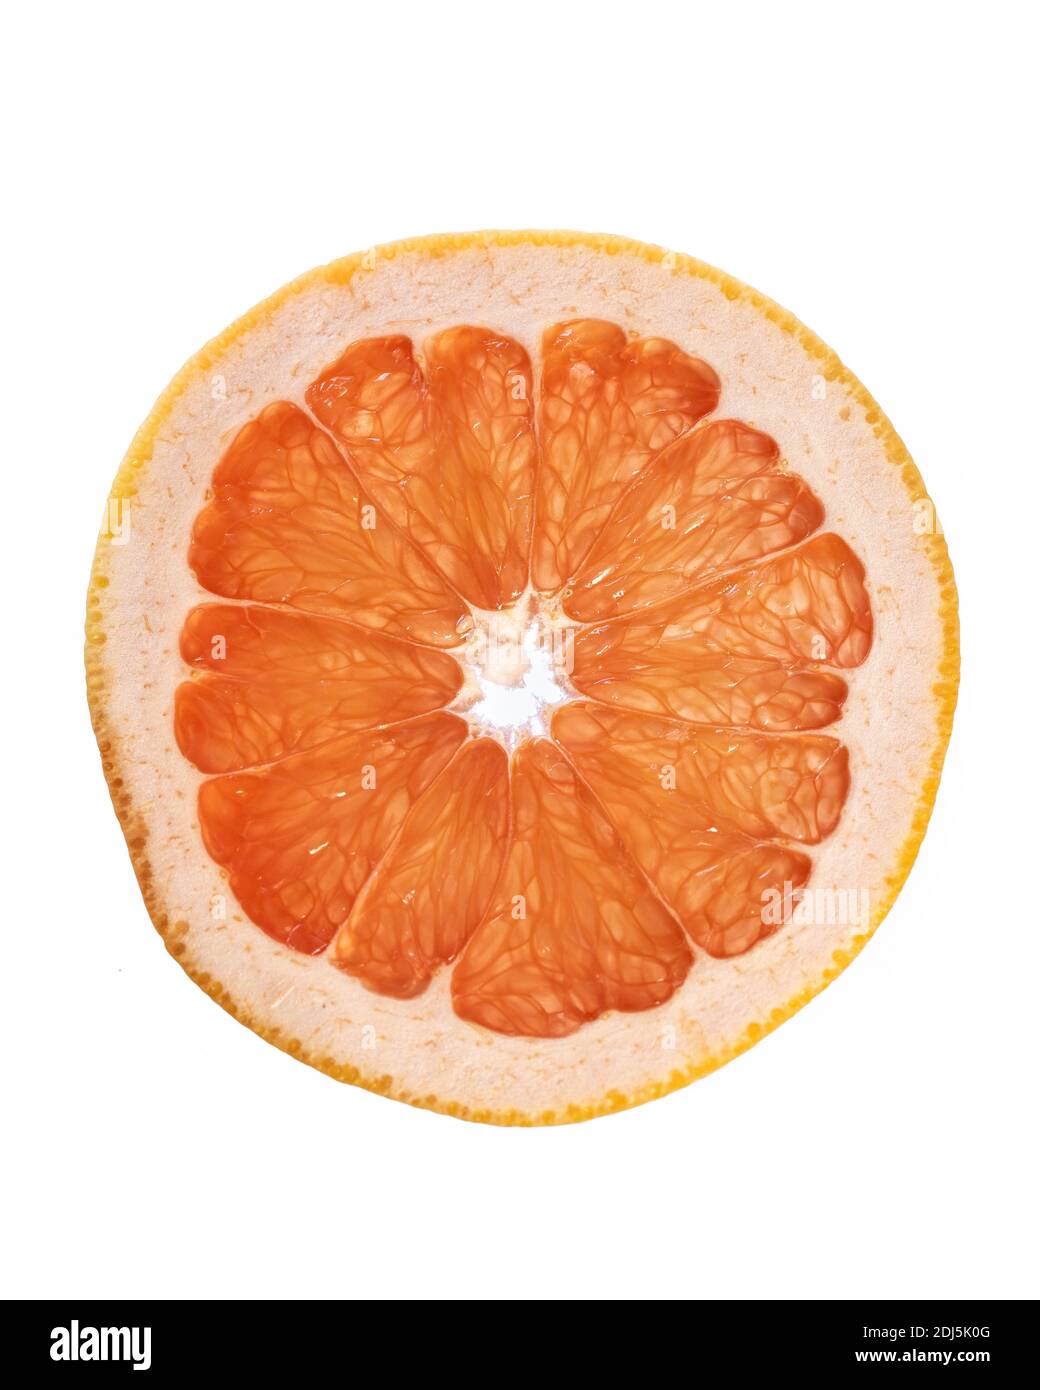 Innere Details der Grapefruit-Scheibe isoliert auf weißem Hintergrund Stockfoto